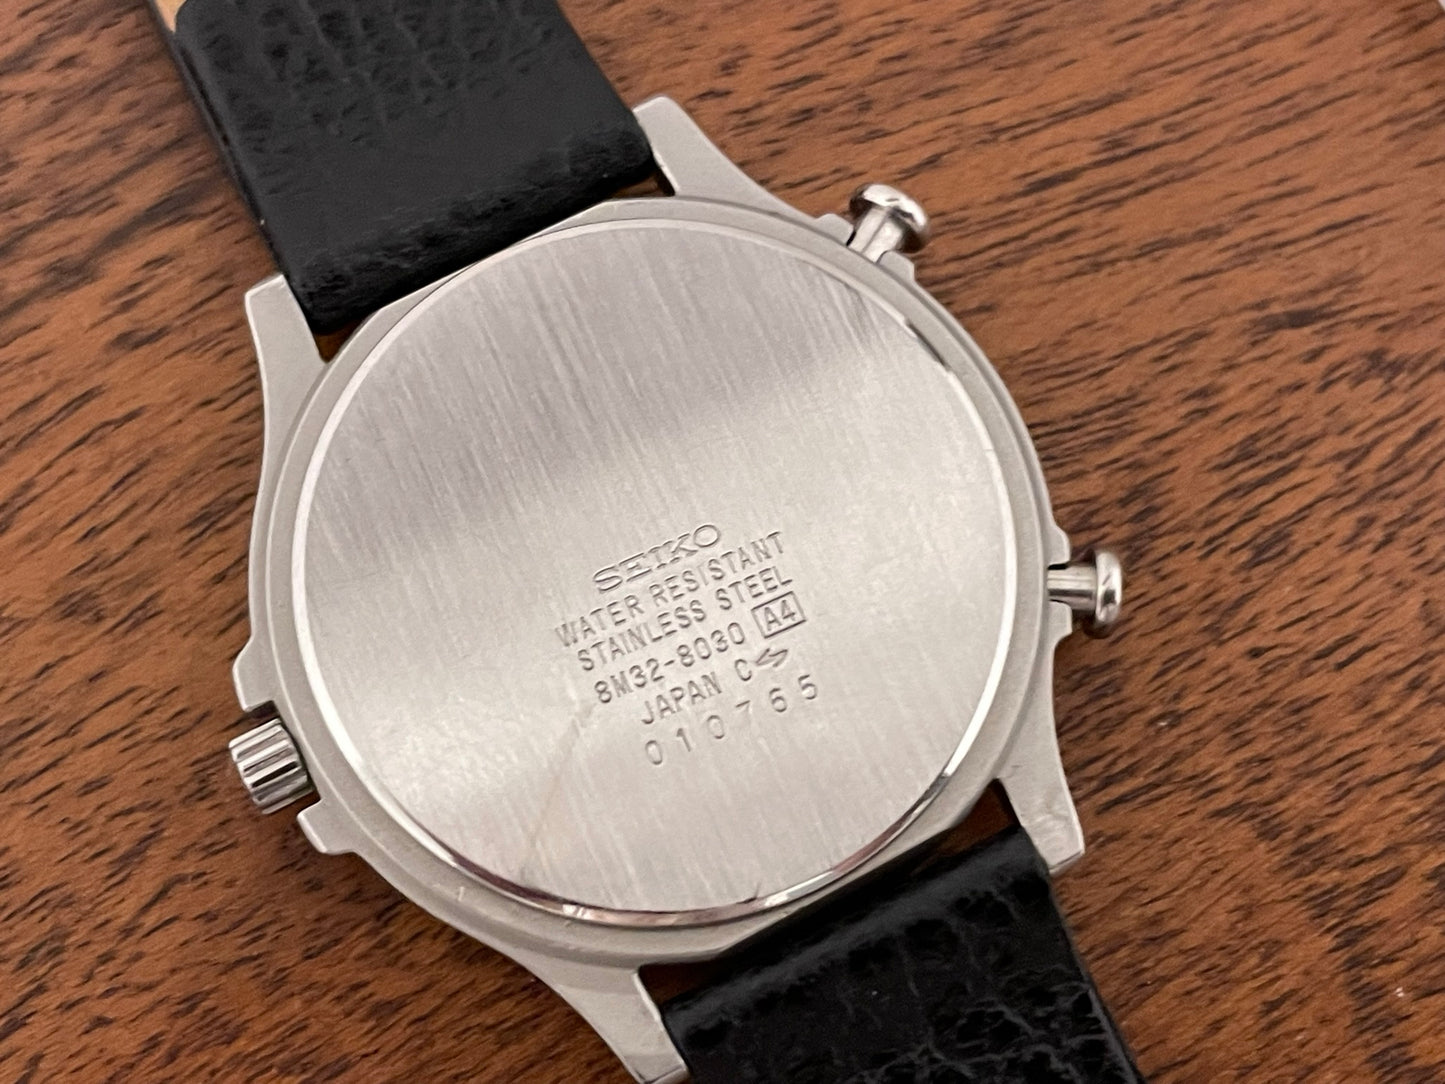 (1990) Seiko 8M32-8030 "Sports Timer" chronograph